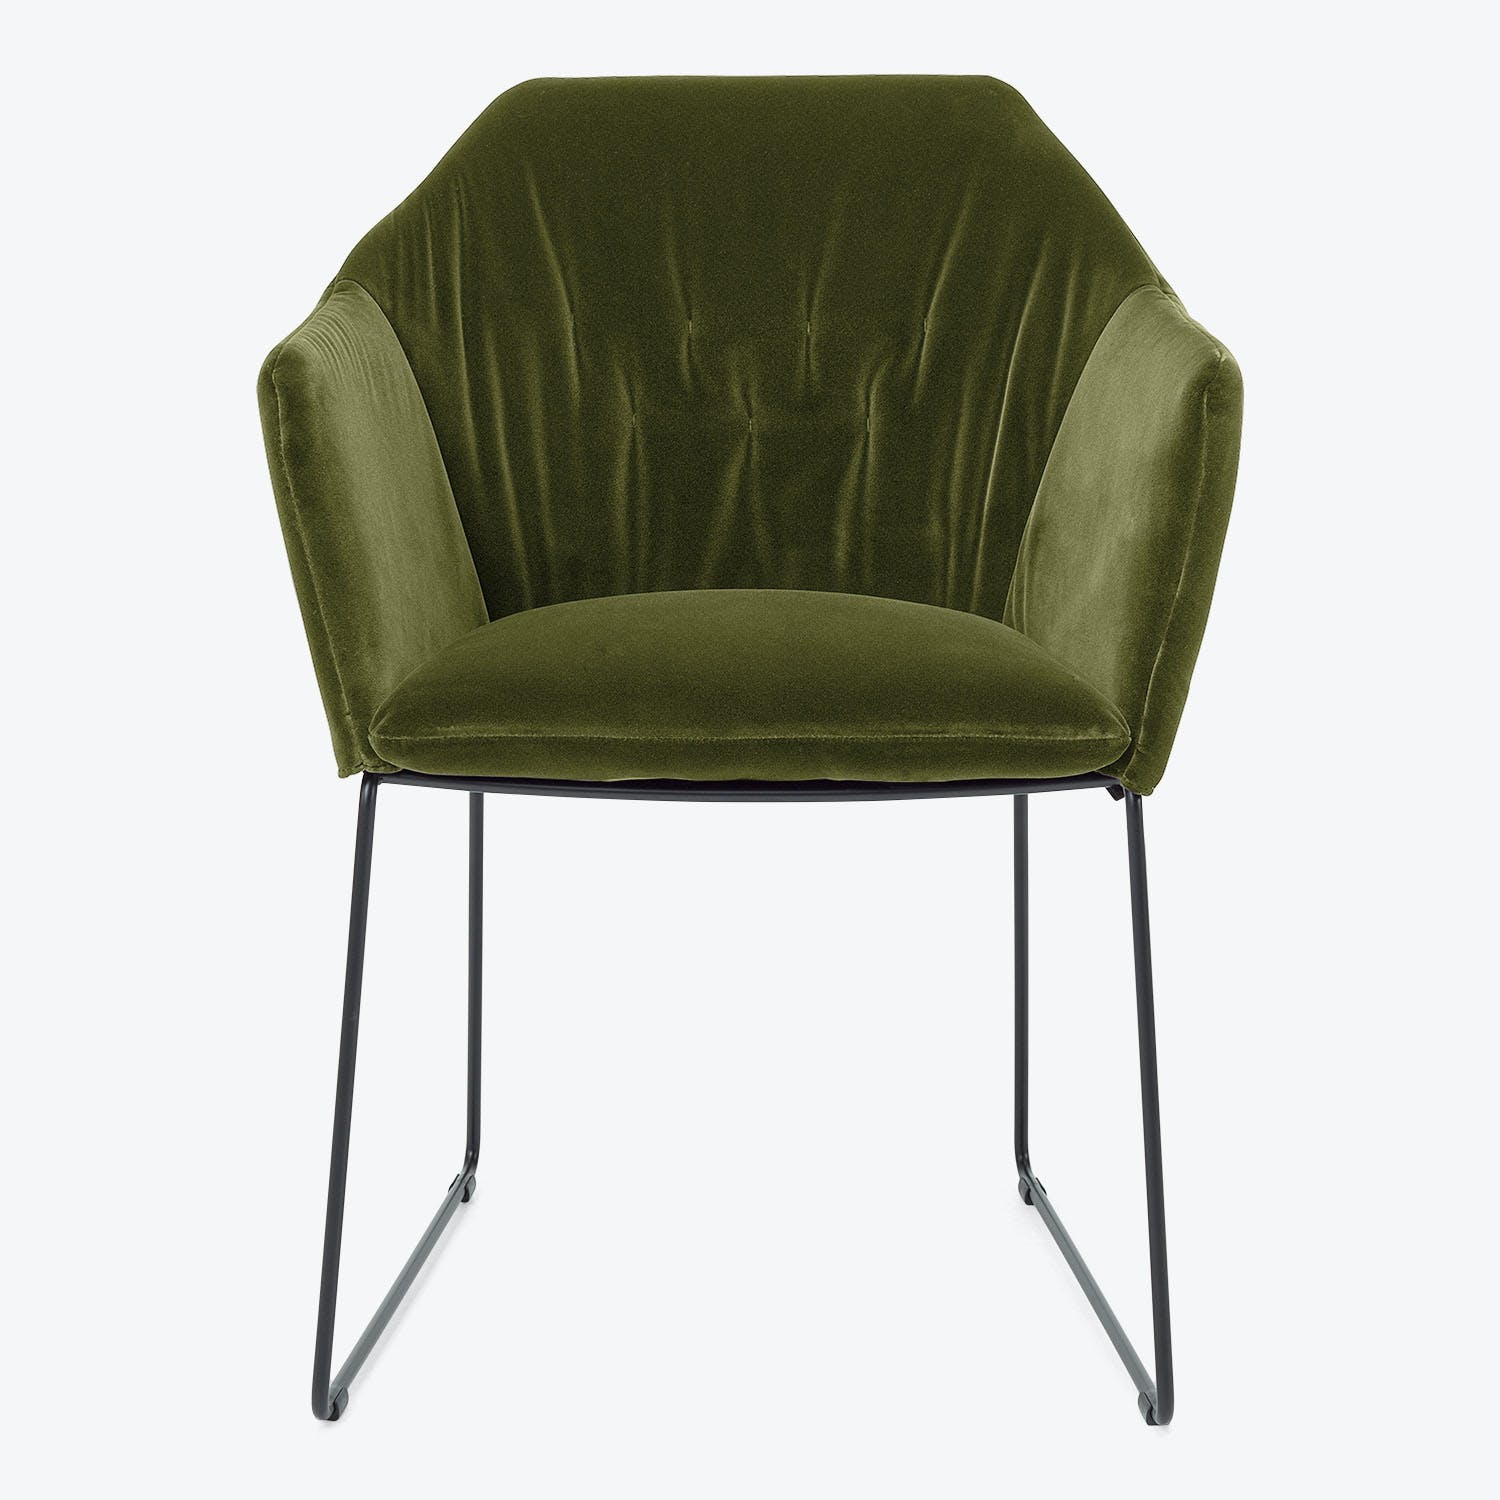 Modern armchair with sleek design, olive green velvet upholstery.